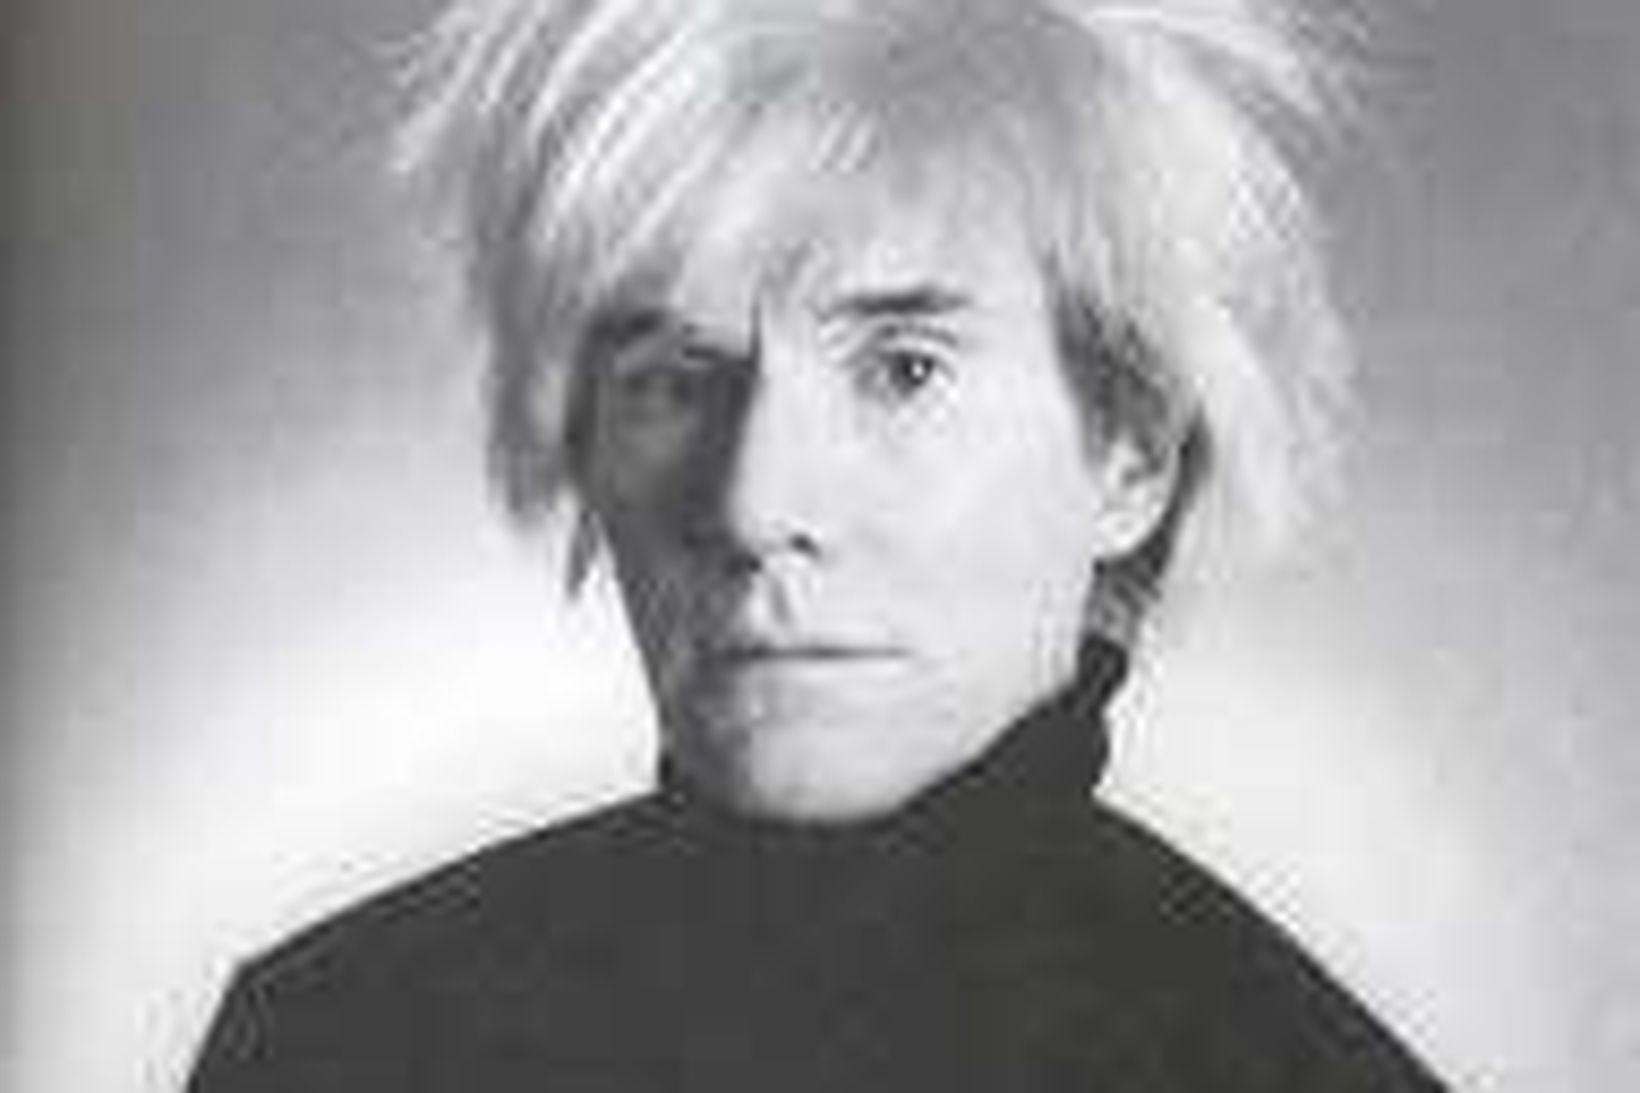 Mynd af Andy Warhol frá árinu 1986